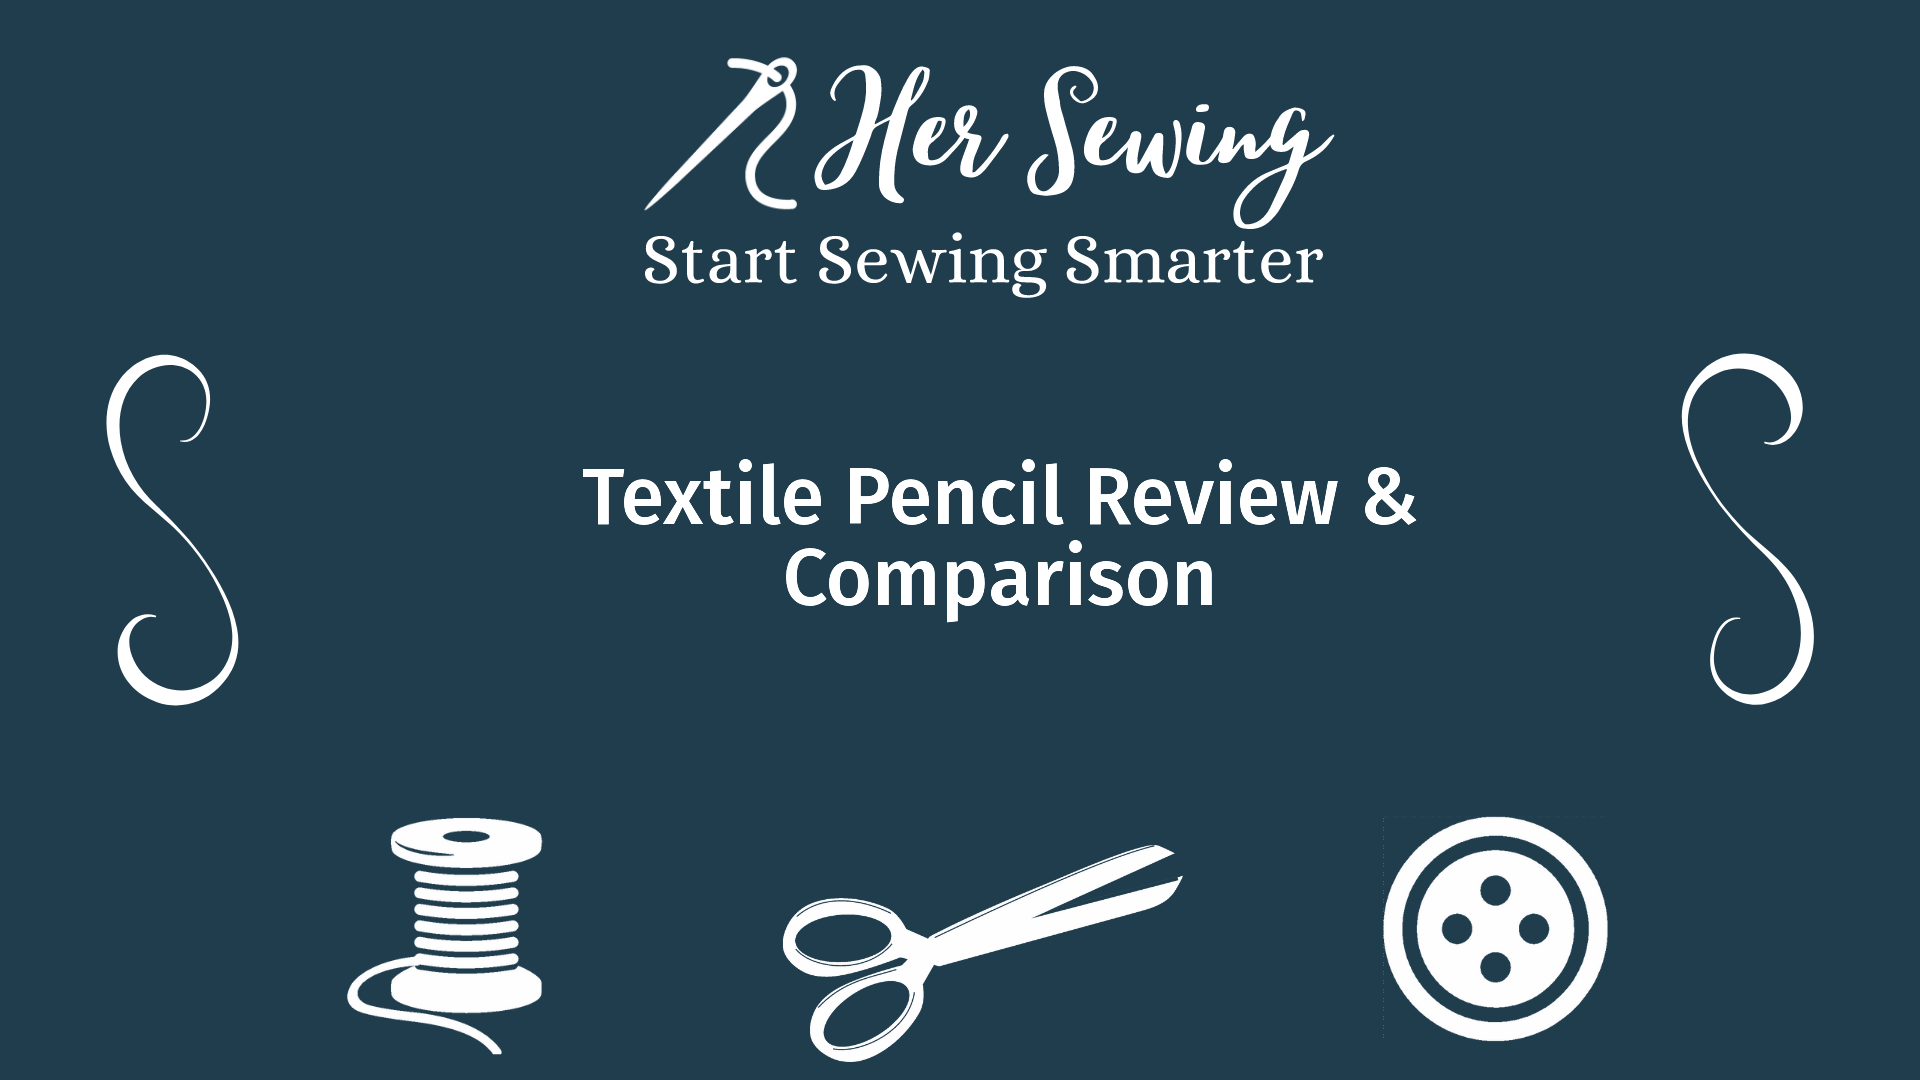 Textile Pencil Review & Comparison